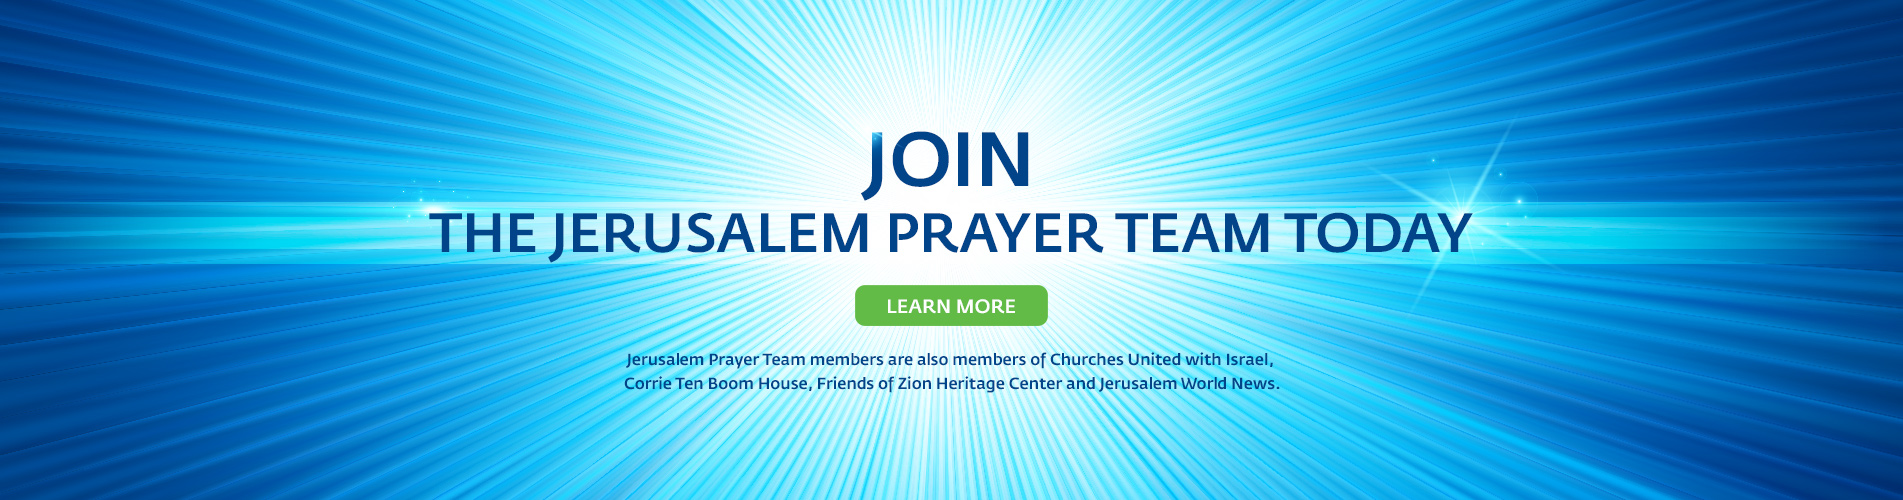 Dr Mike Evans - President - Jerusalem Prayer Team